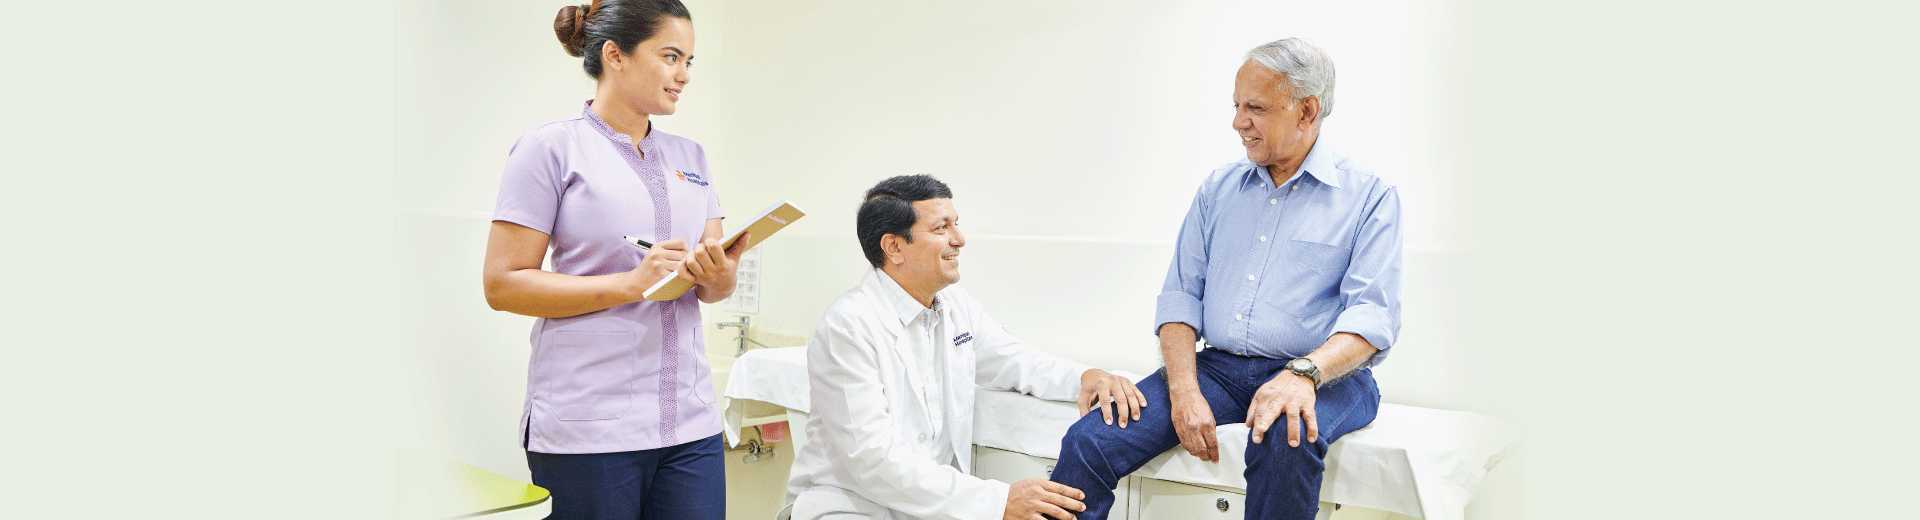 Best Orthopedic Hospital in Gurgaon